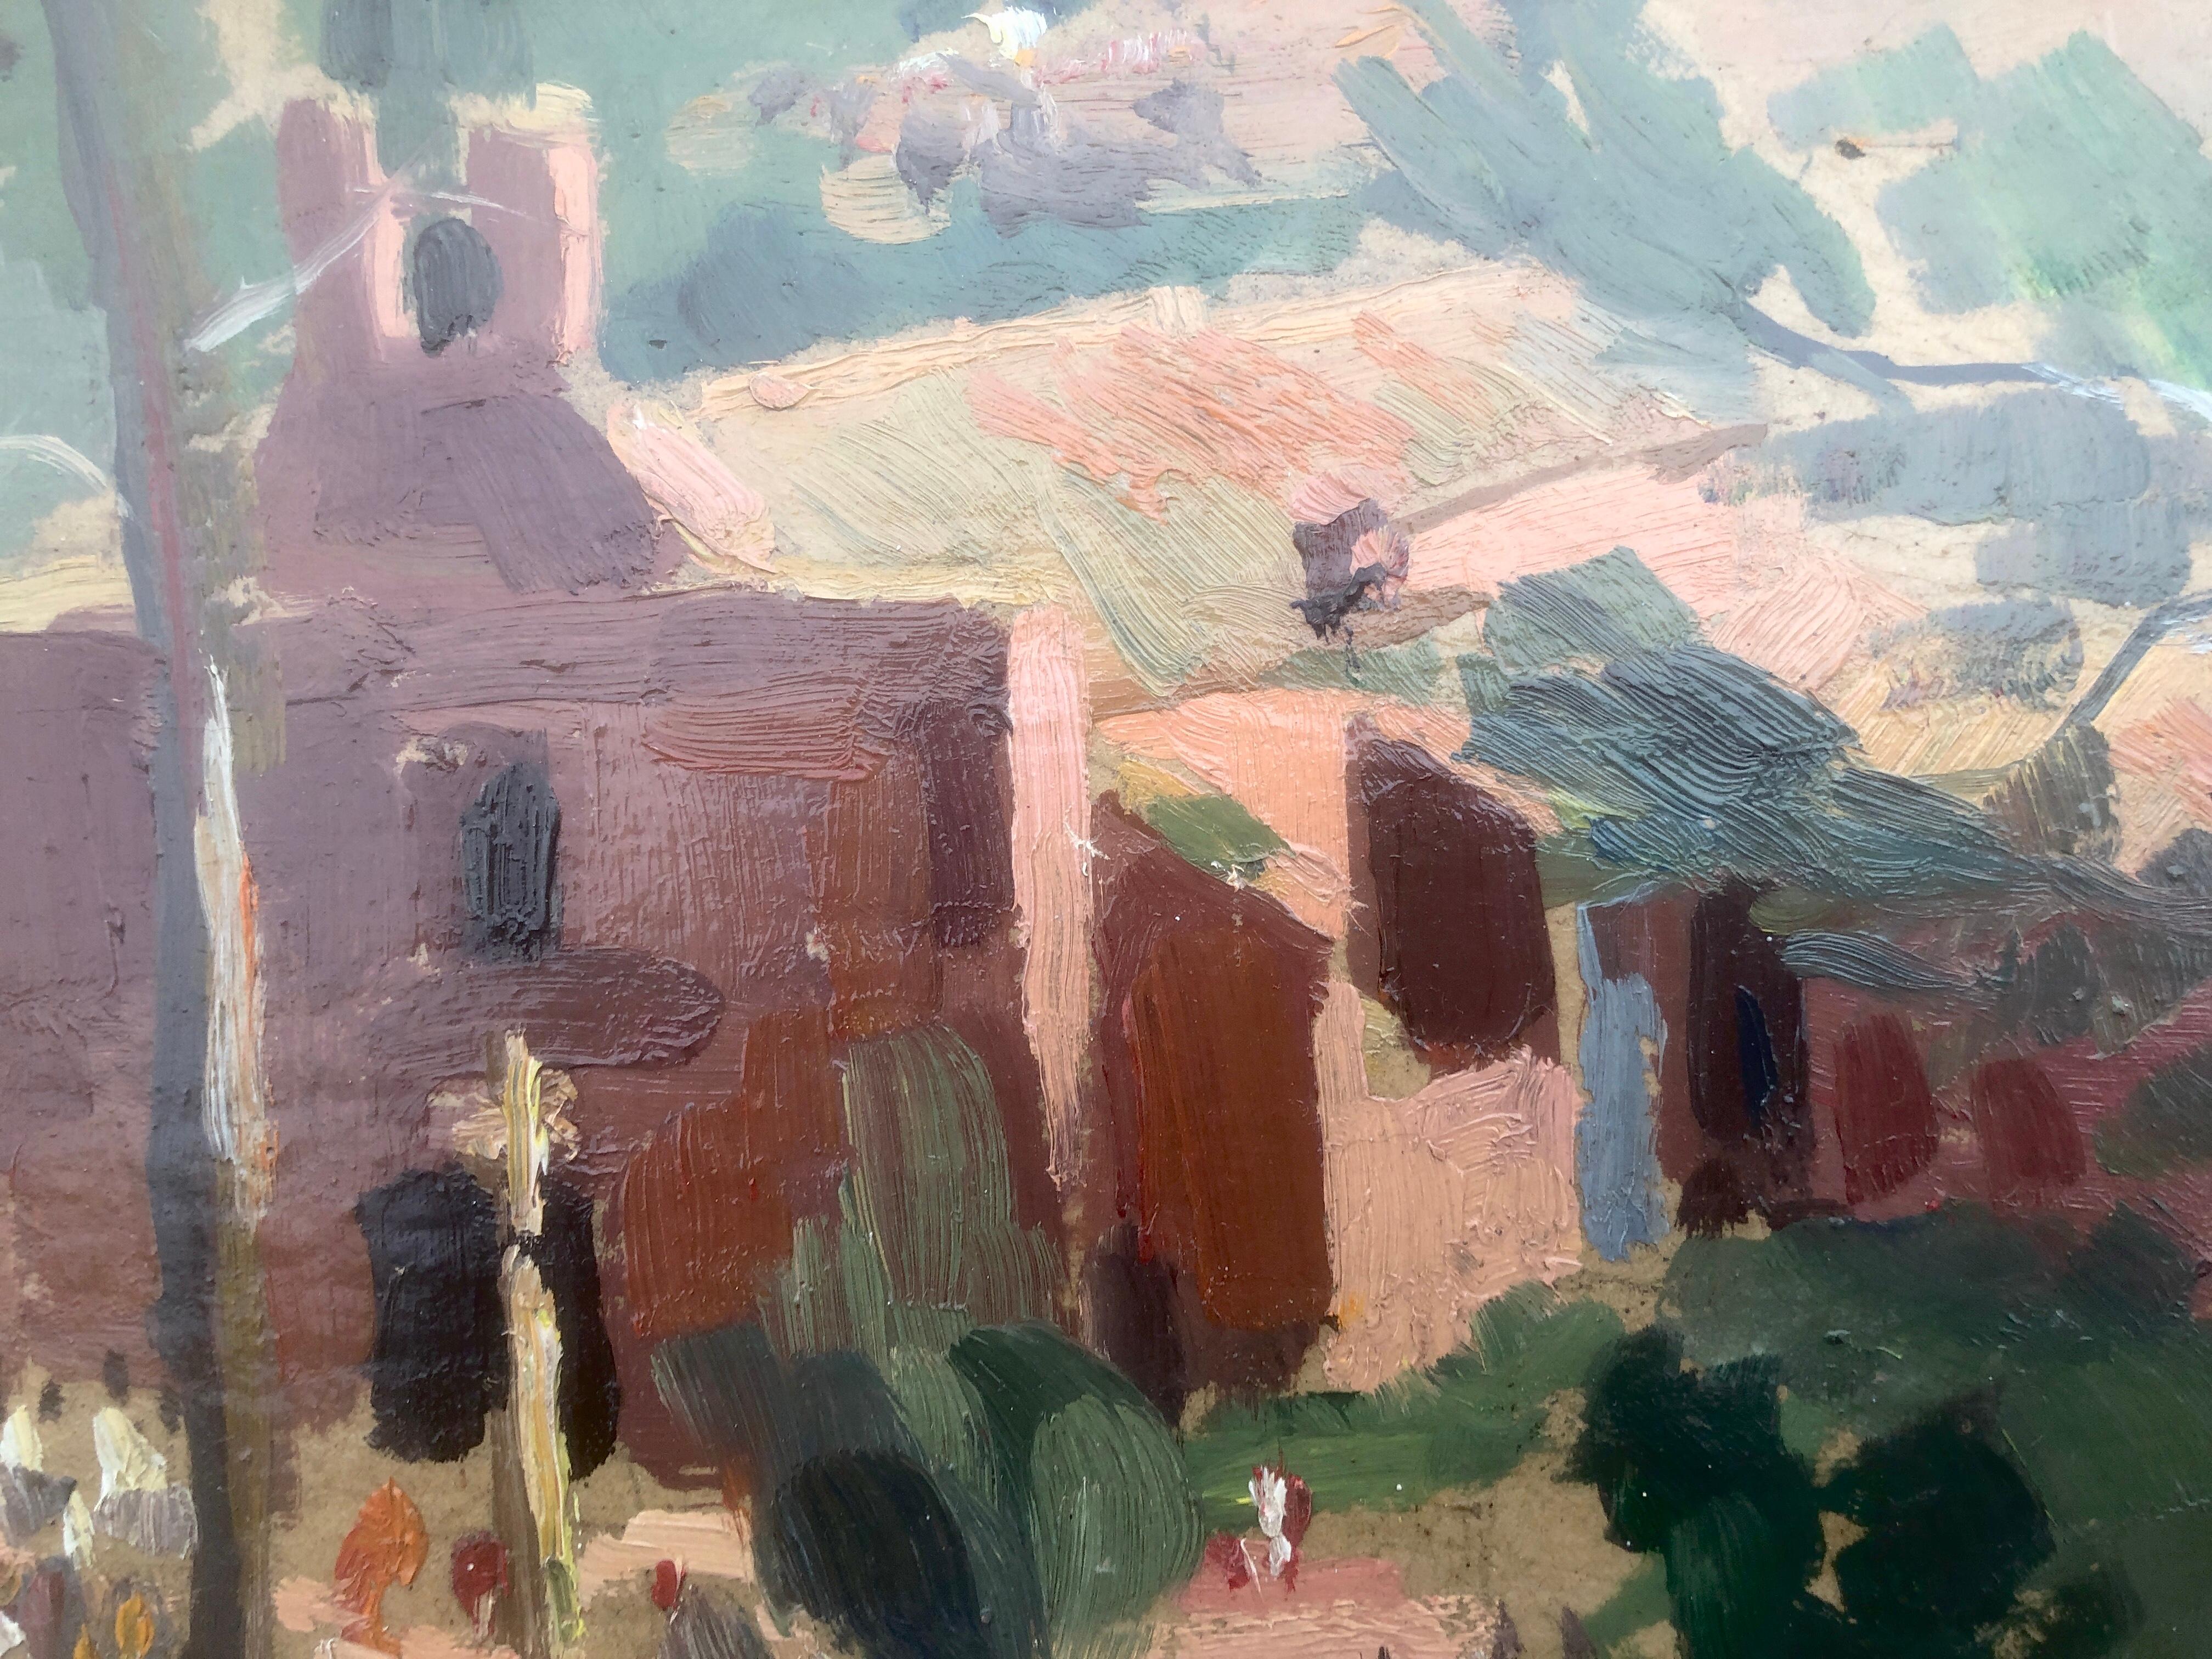 Juan Gil y Gil (1900-1984) - Landschaft mit Einsiedelei - Öl auf Platte
Maße Öl 27x35 cm.
Rahmenlos

Malerin. Er begann seine künstlerische Ausbildung in Paris, die er später an der Schule Sant Jordi in Barcelona fortsetzte, wo er später auch Lehrer